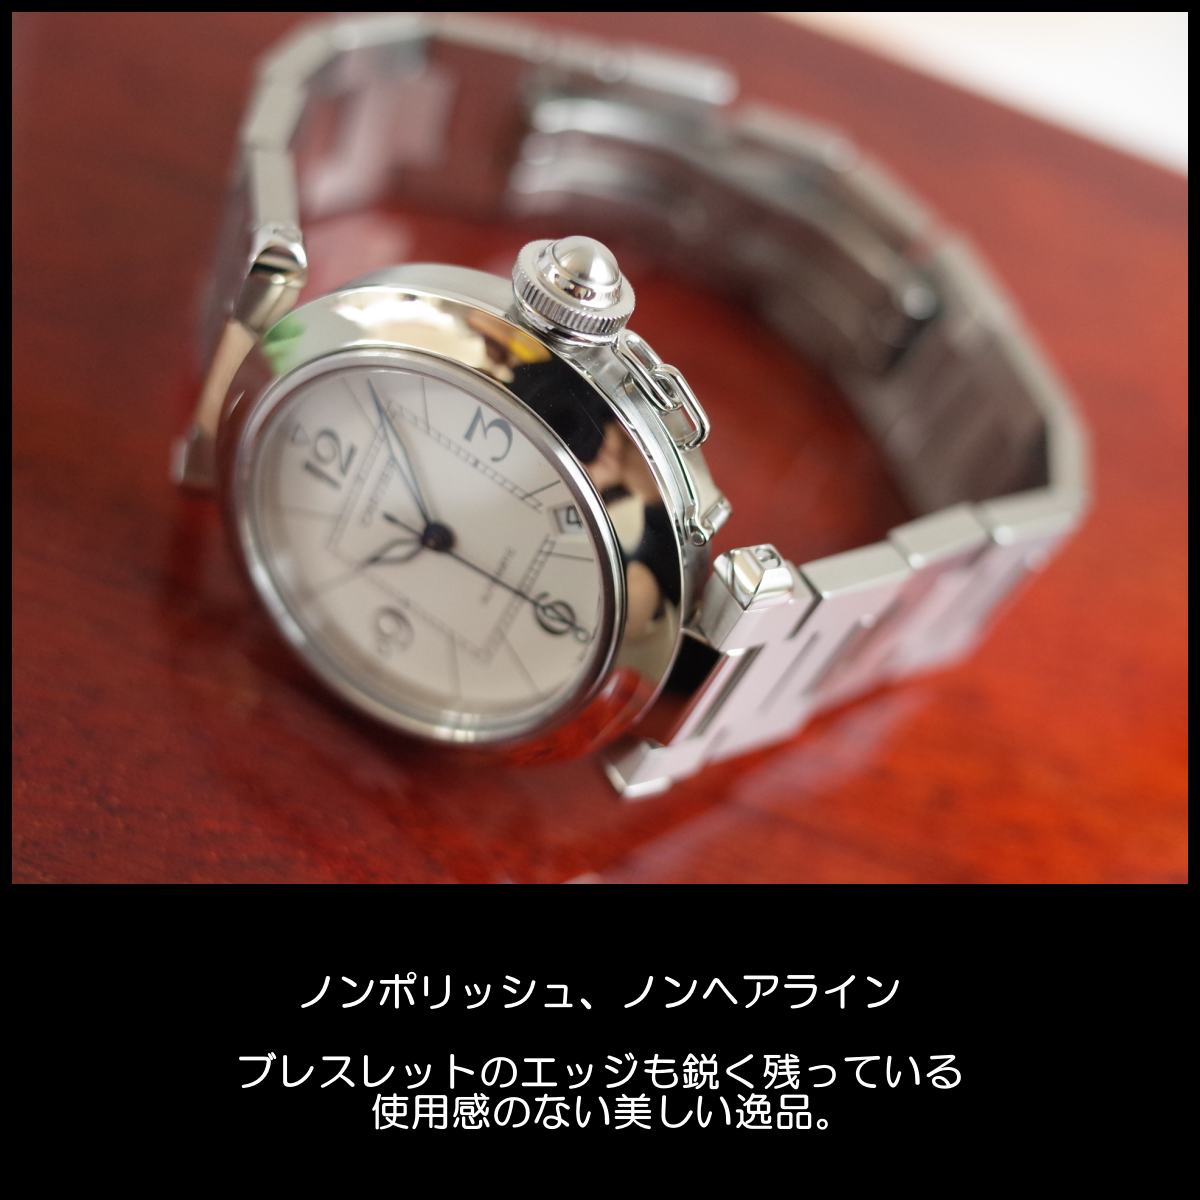 カルティエ パシャC メンズ W31074M7 CARTIER 腕時計 自動巻き 保証書 新品同様 ローザンジュ針【中古】 | ブランドショップパリノ